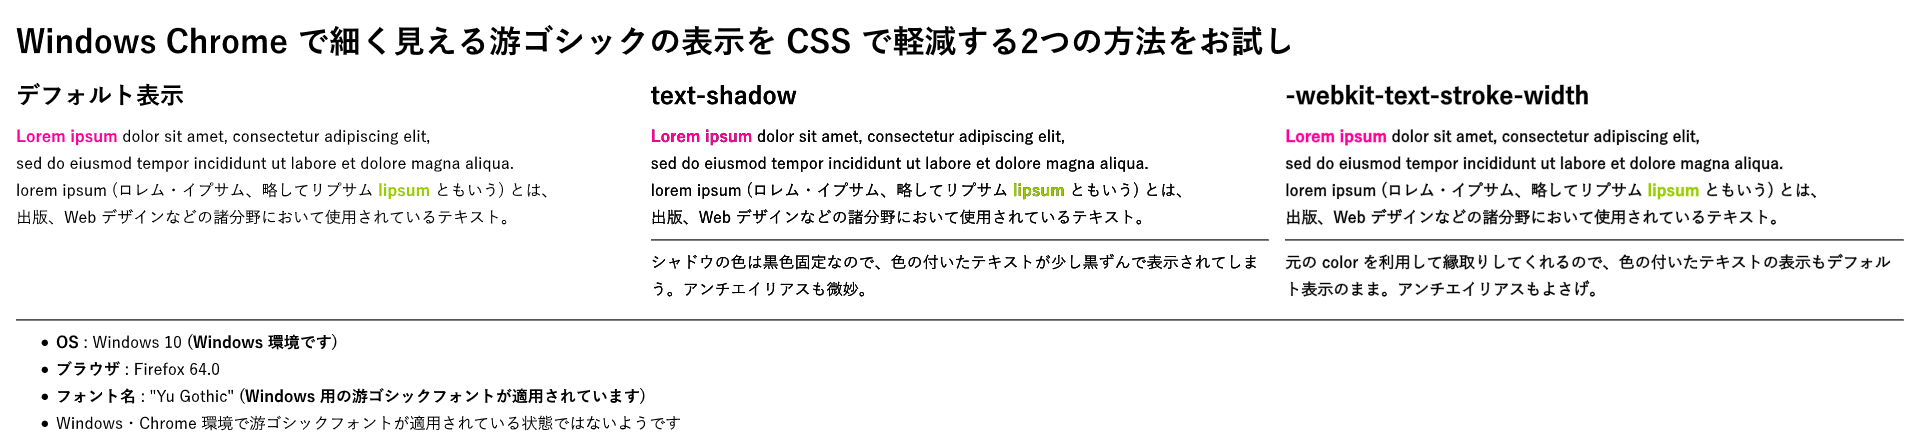 Firefox は text-shadow がにじむ